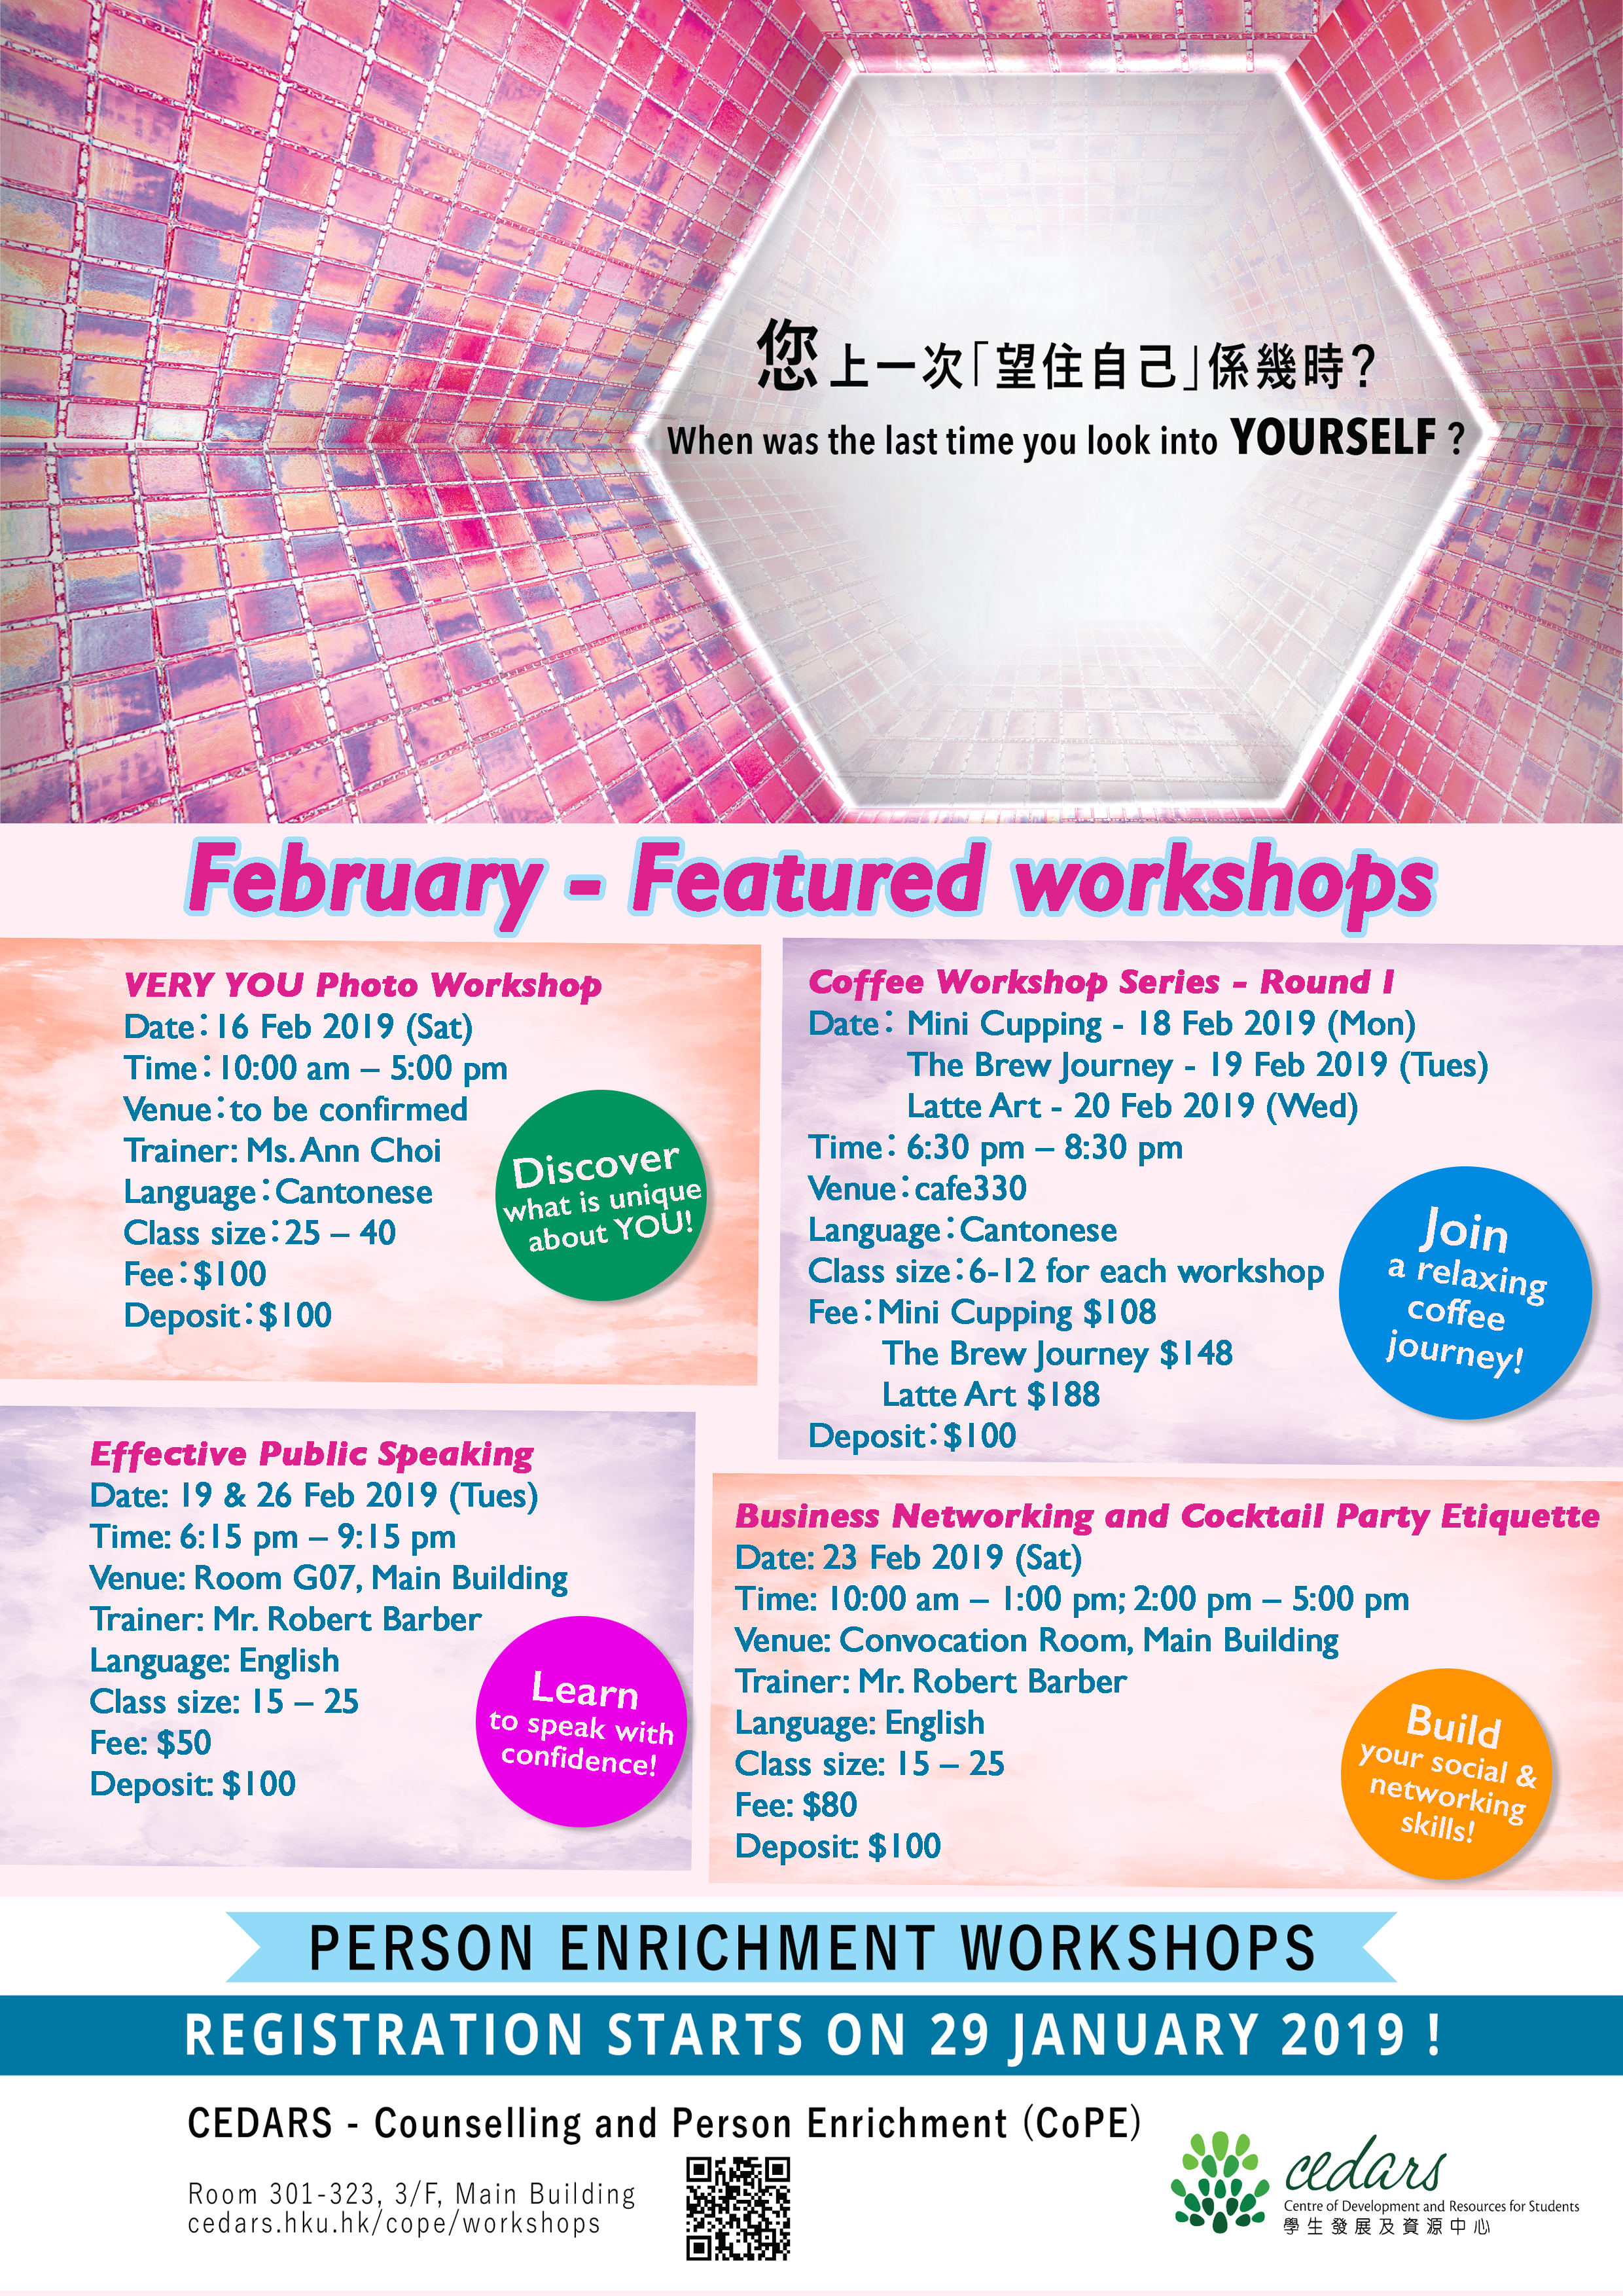 Person Enrichment Workshops